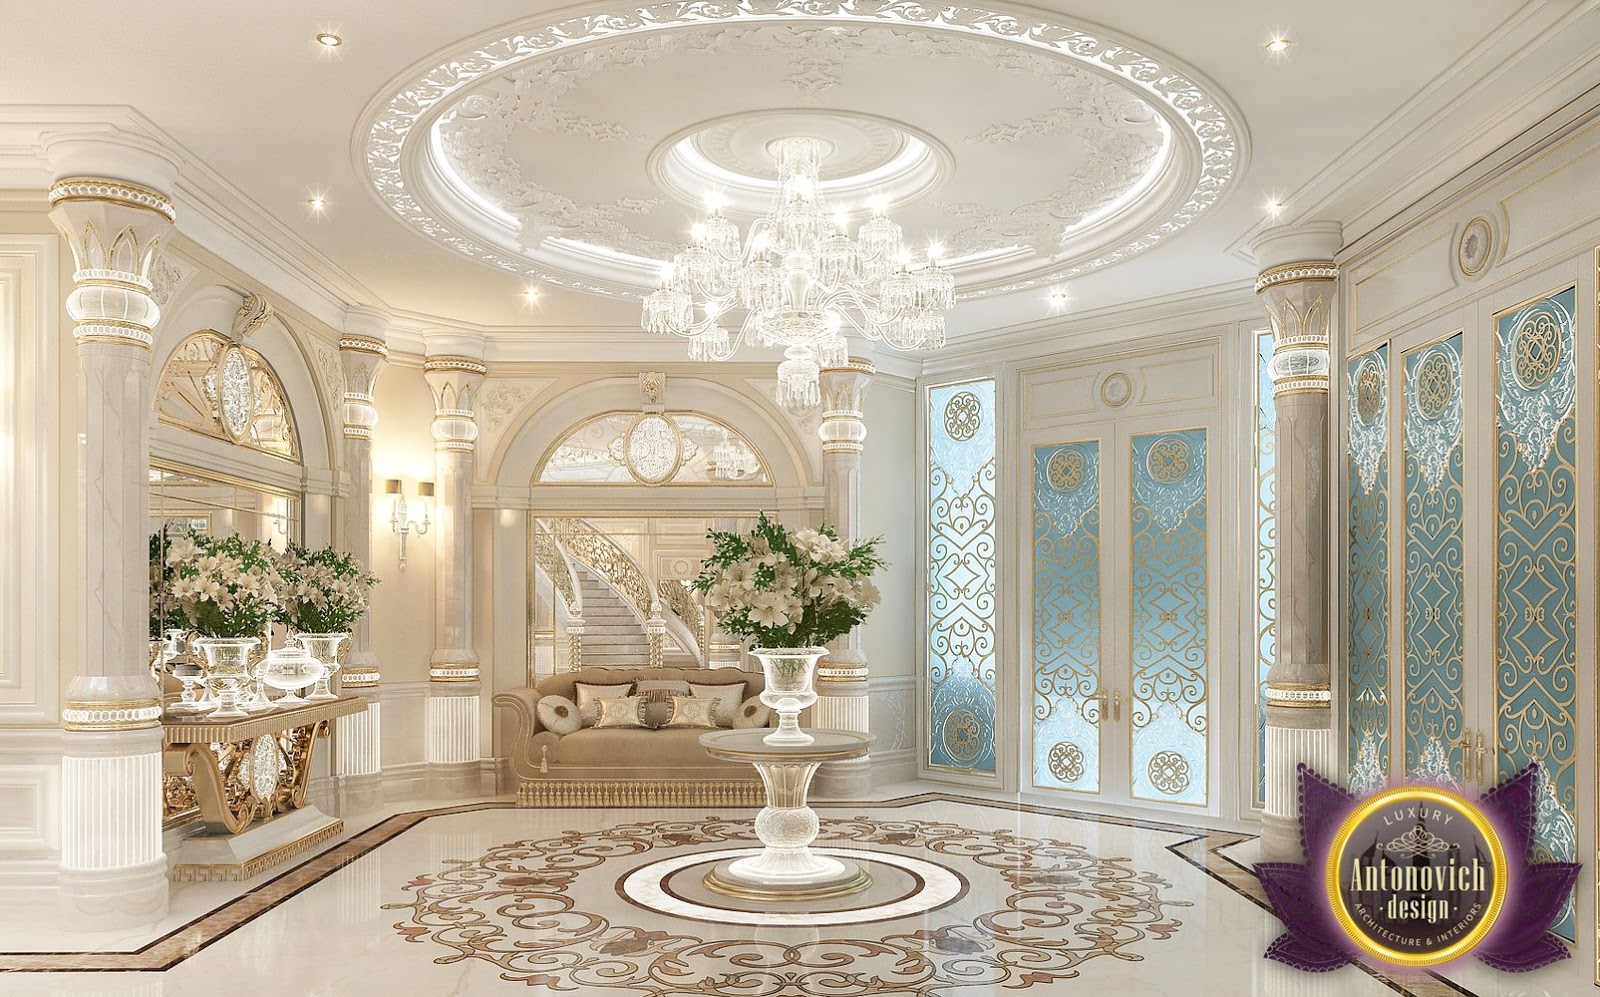 LUXURY ANTONOVICH DESIGN UAE: Best interiors of Luxury Antonovich ...